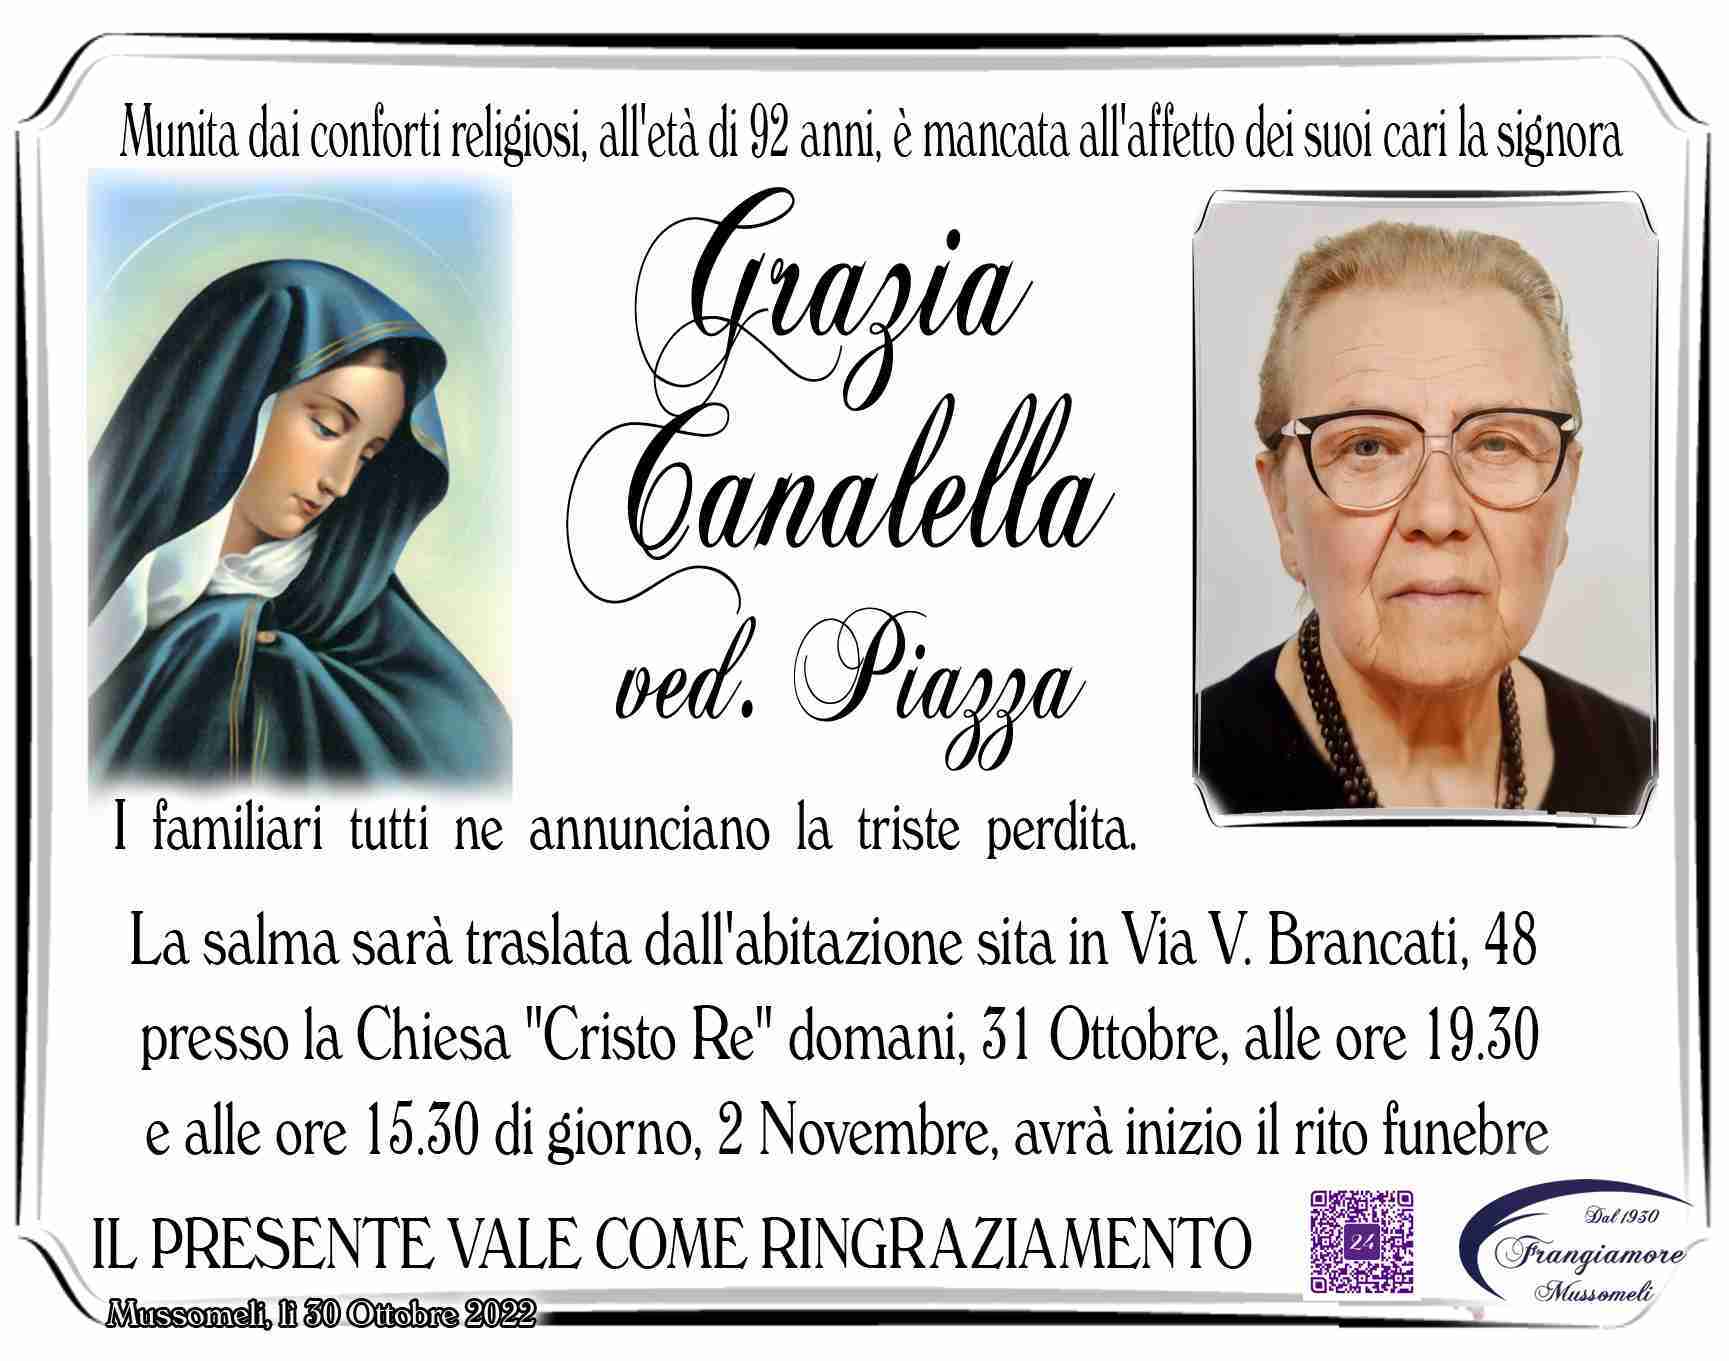 Grazia Canalella